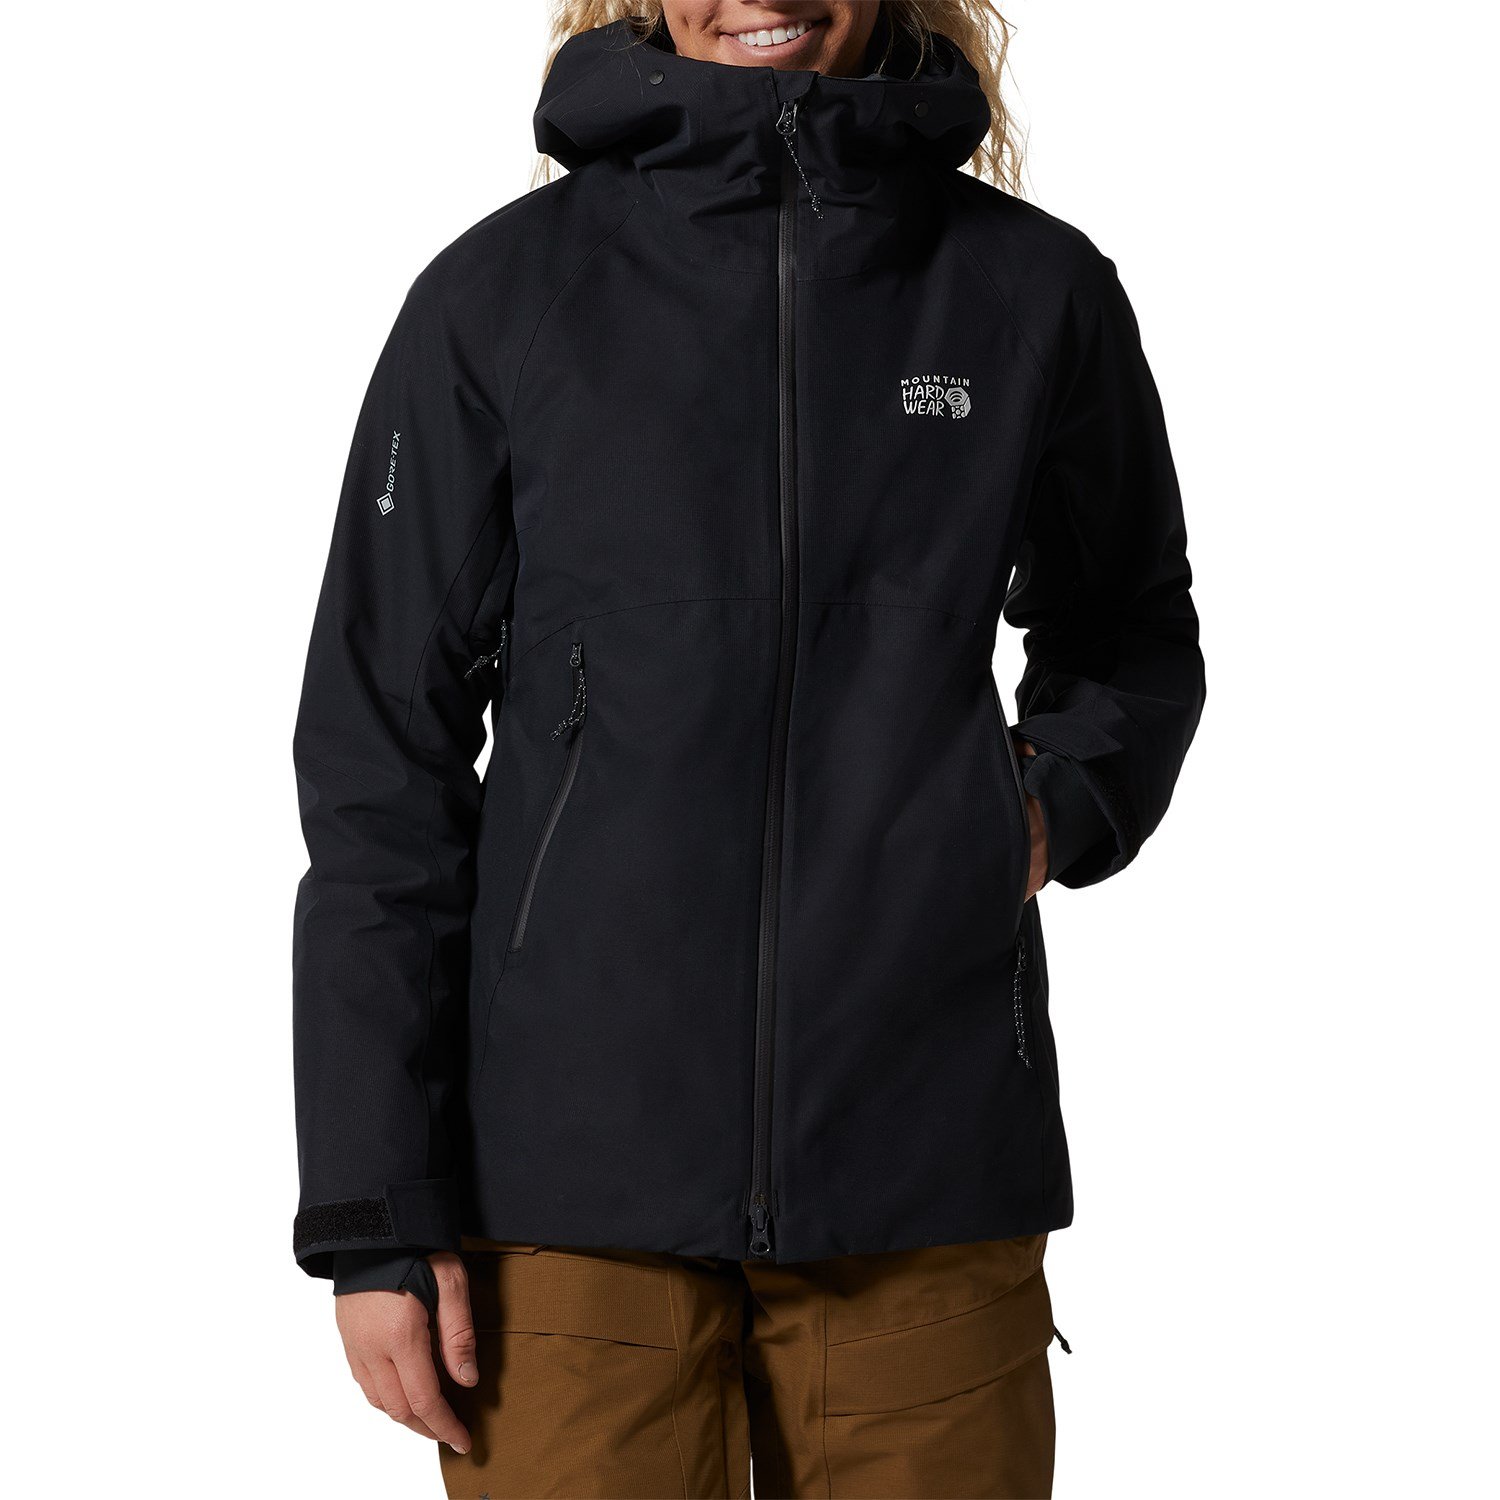 Куртка Mountain Hardwear Cloud Bank Gore-TEX LT утепленная, черный куртка утепленная для мальчиков demix черный